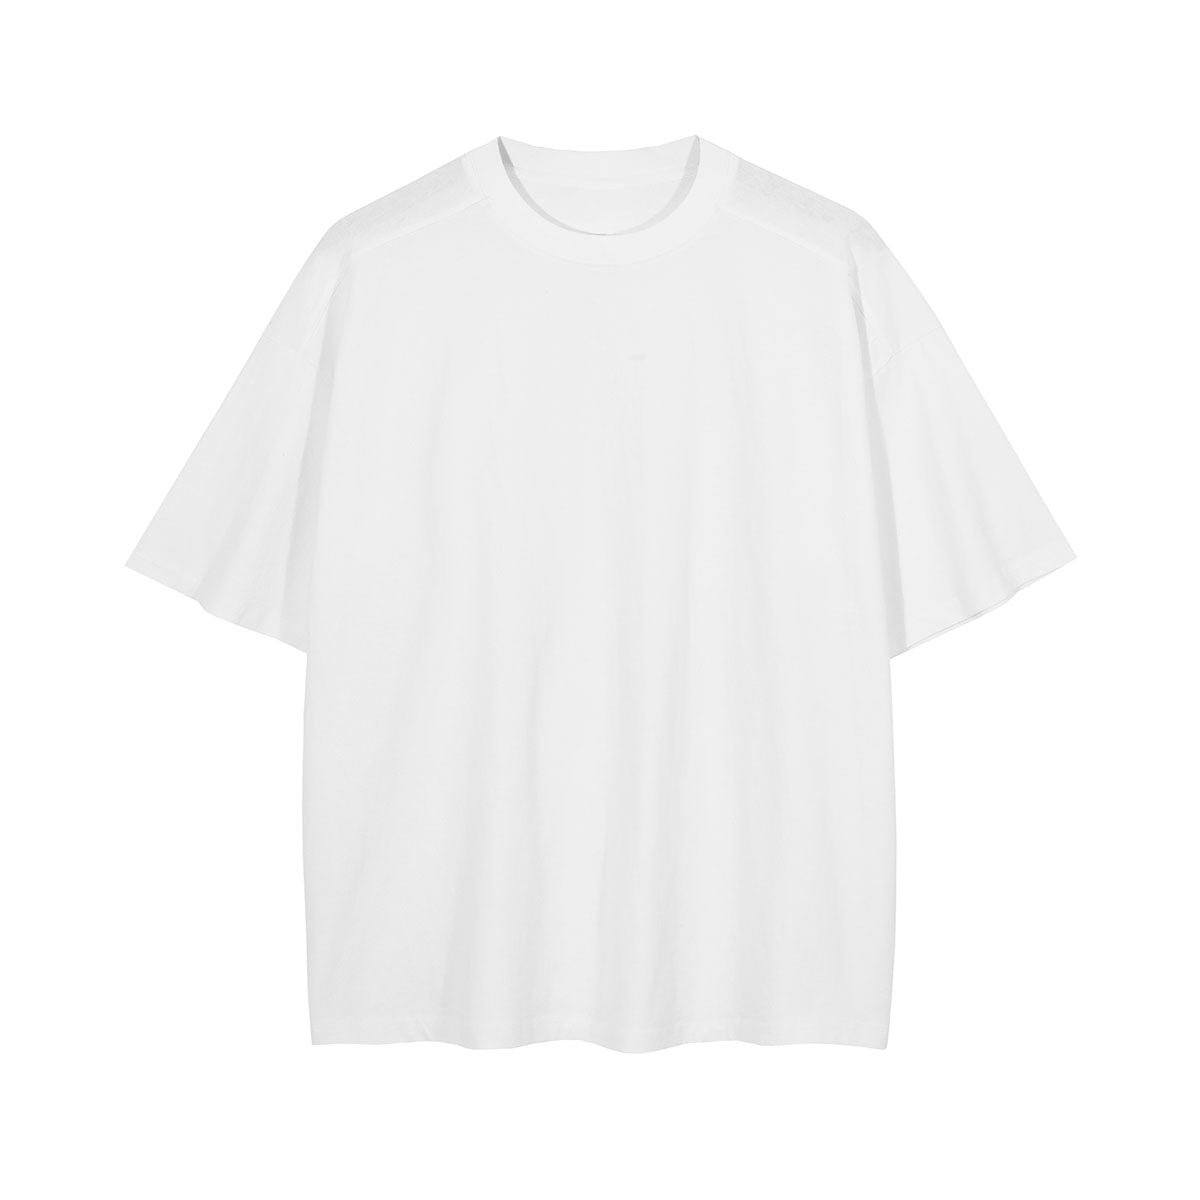 Monster factory wholesale unisex cotton t shirt custom solid color men t shirts